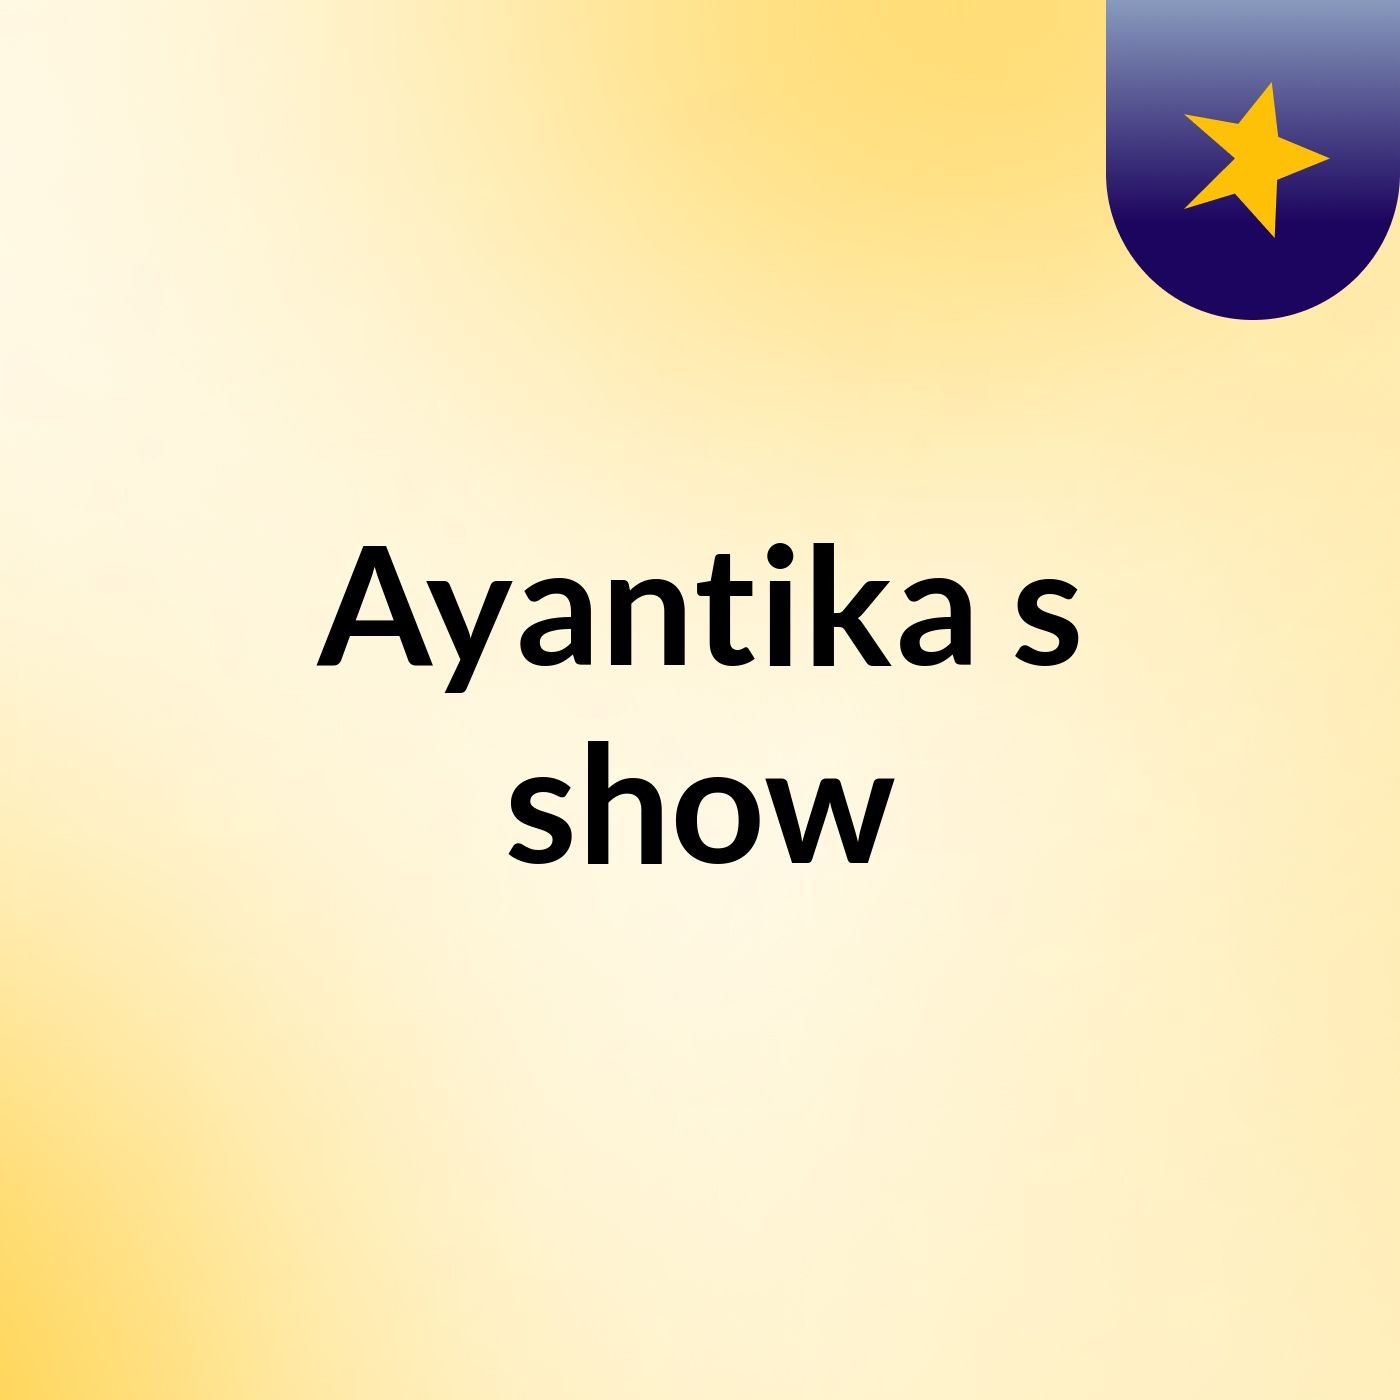 Ayantika's show